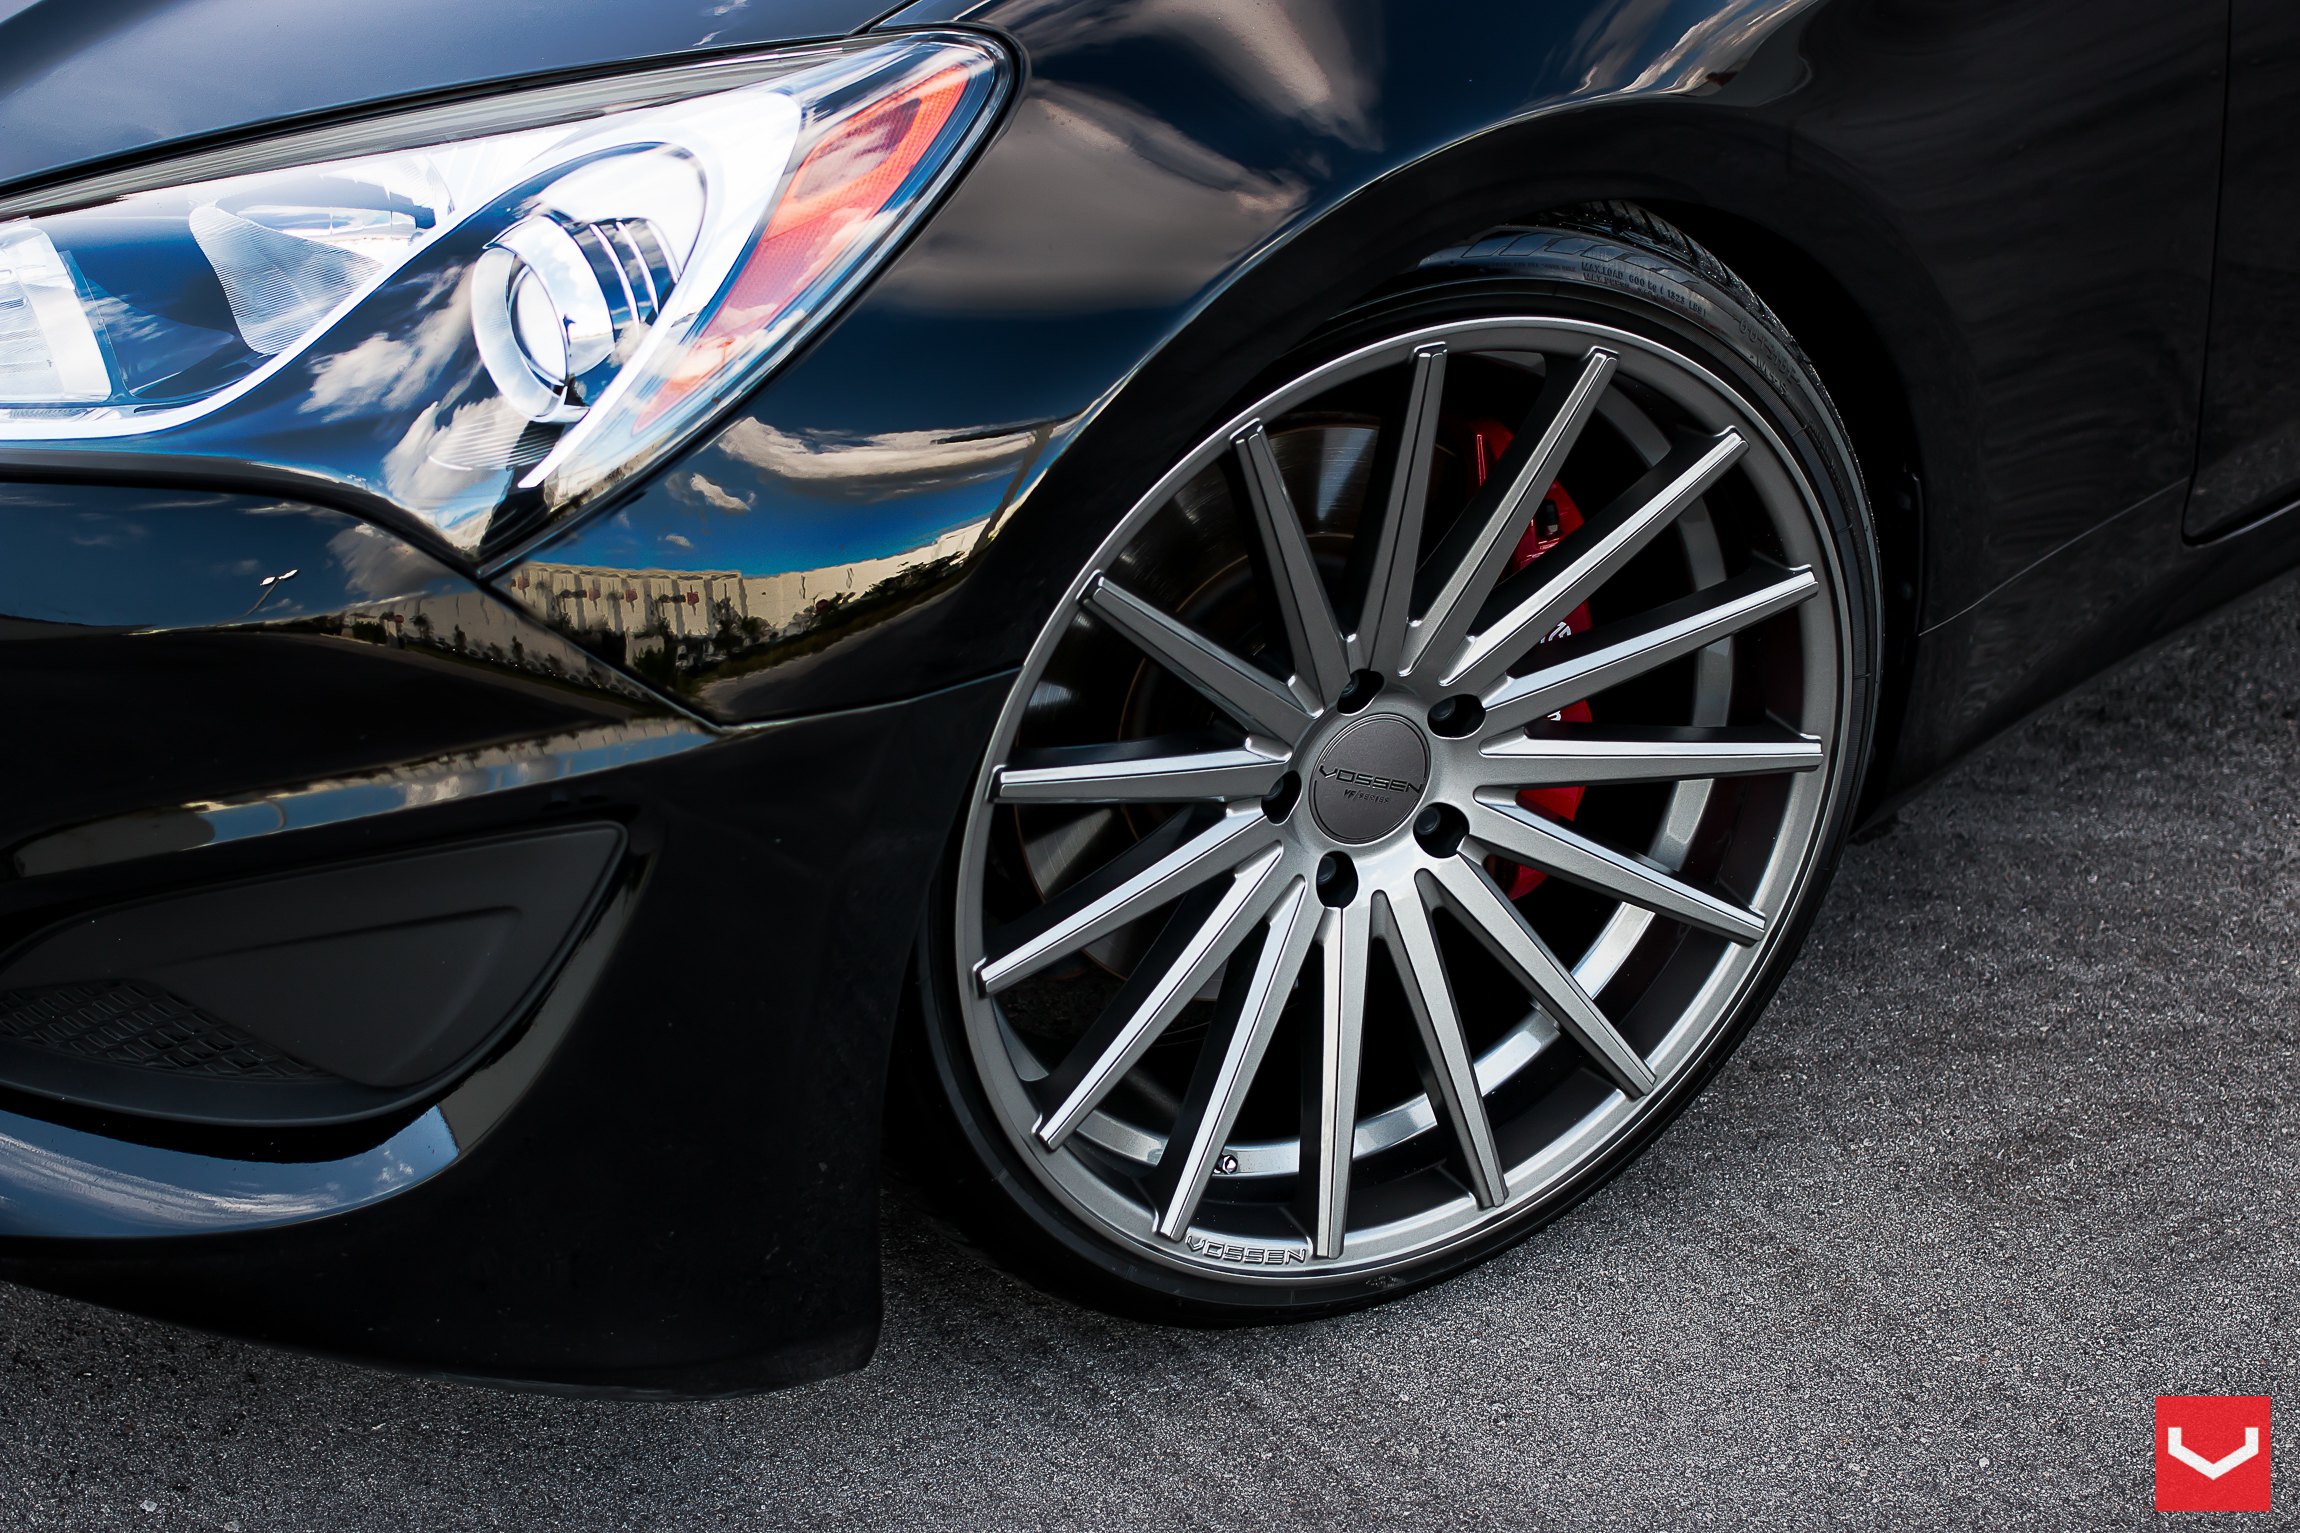 Vossen VFS Wheels on Black Hyundai Genesis Coupe - Photo by Vossen